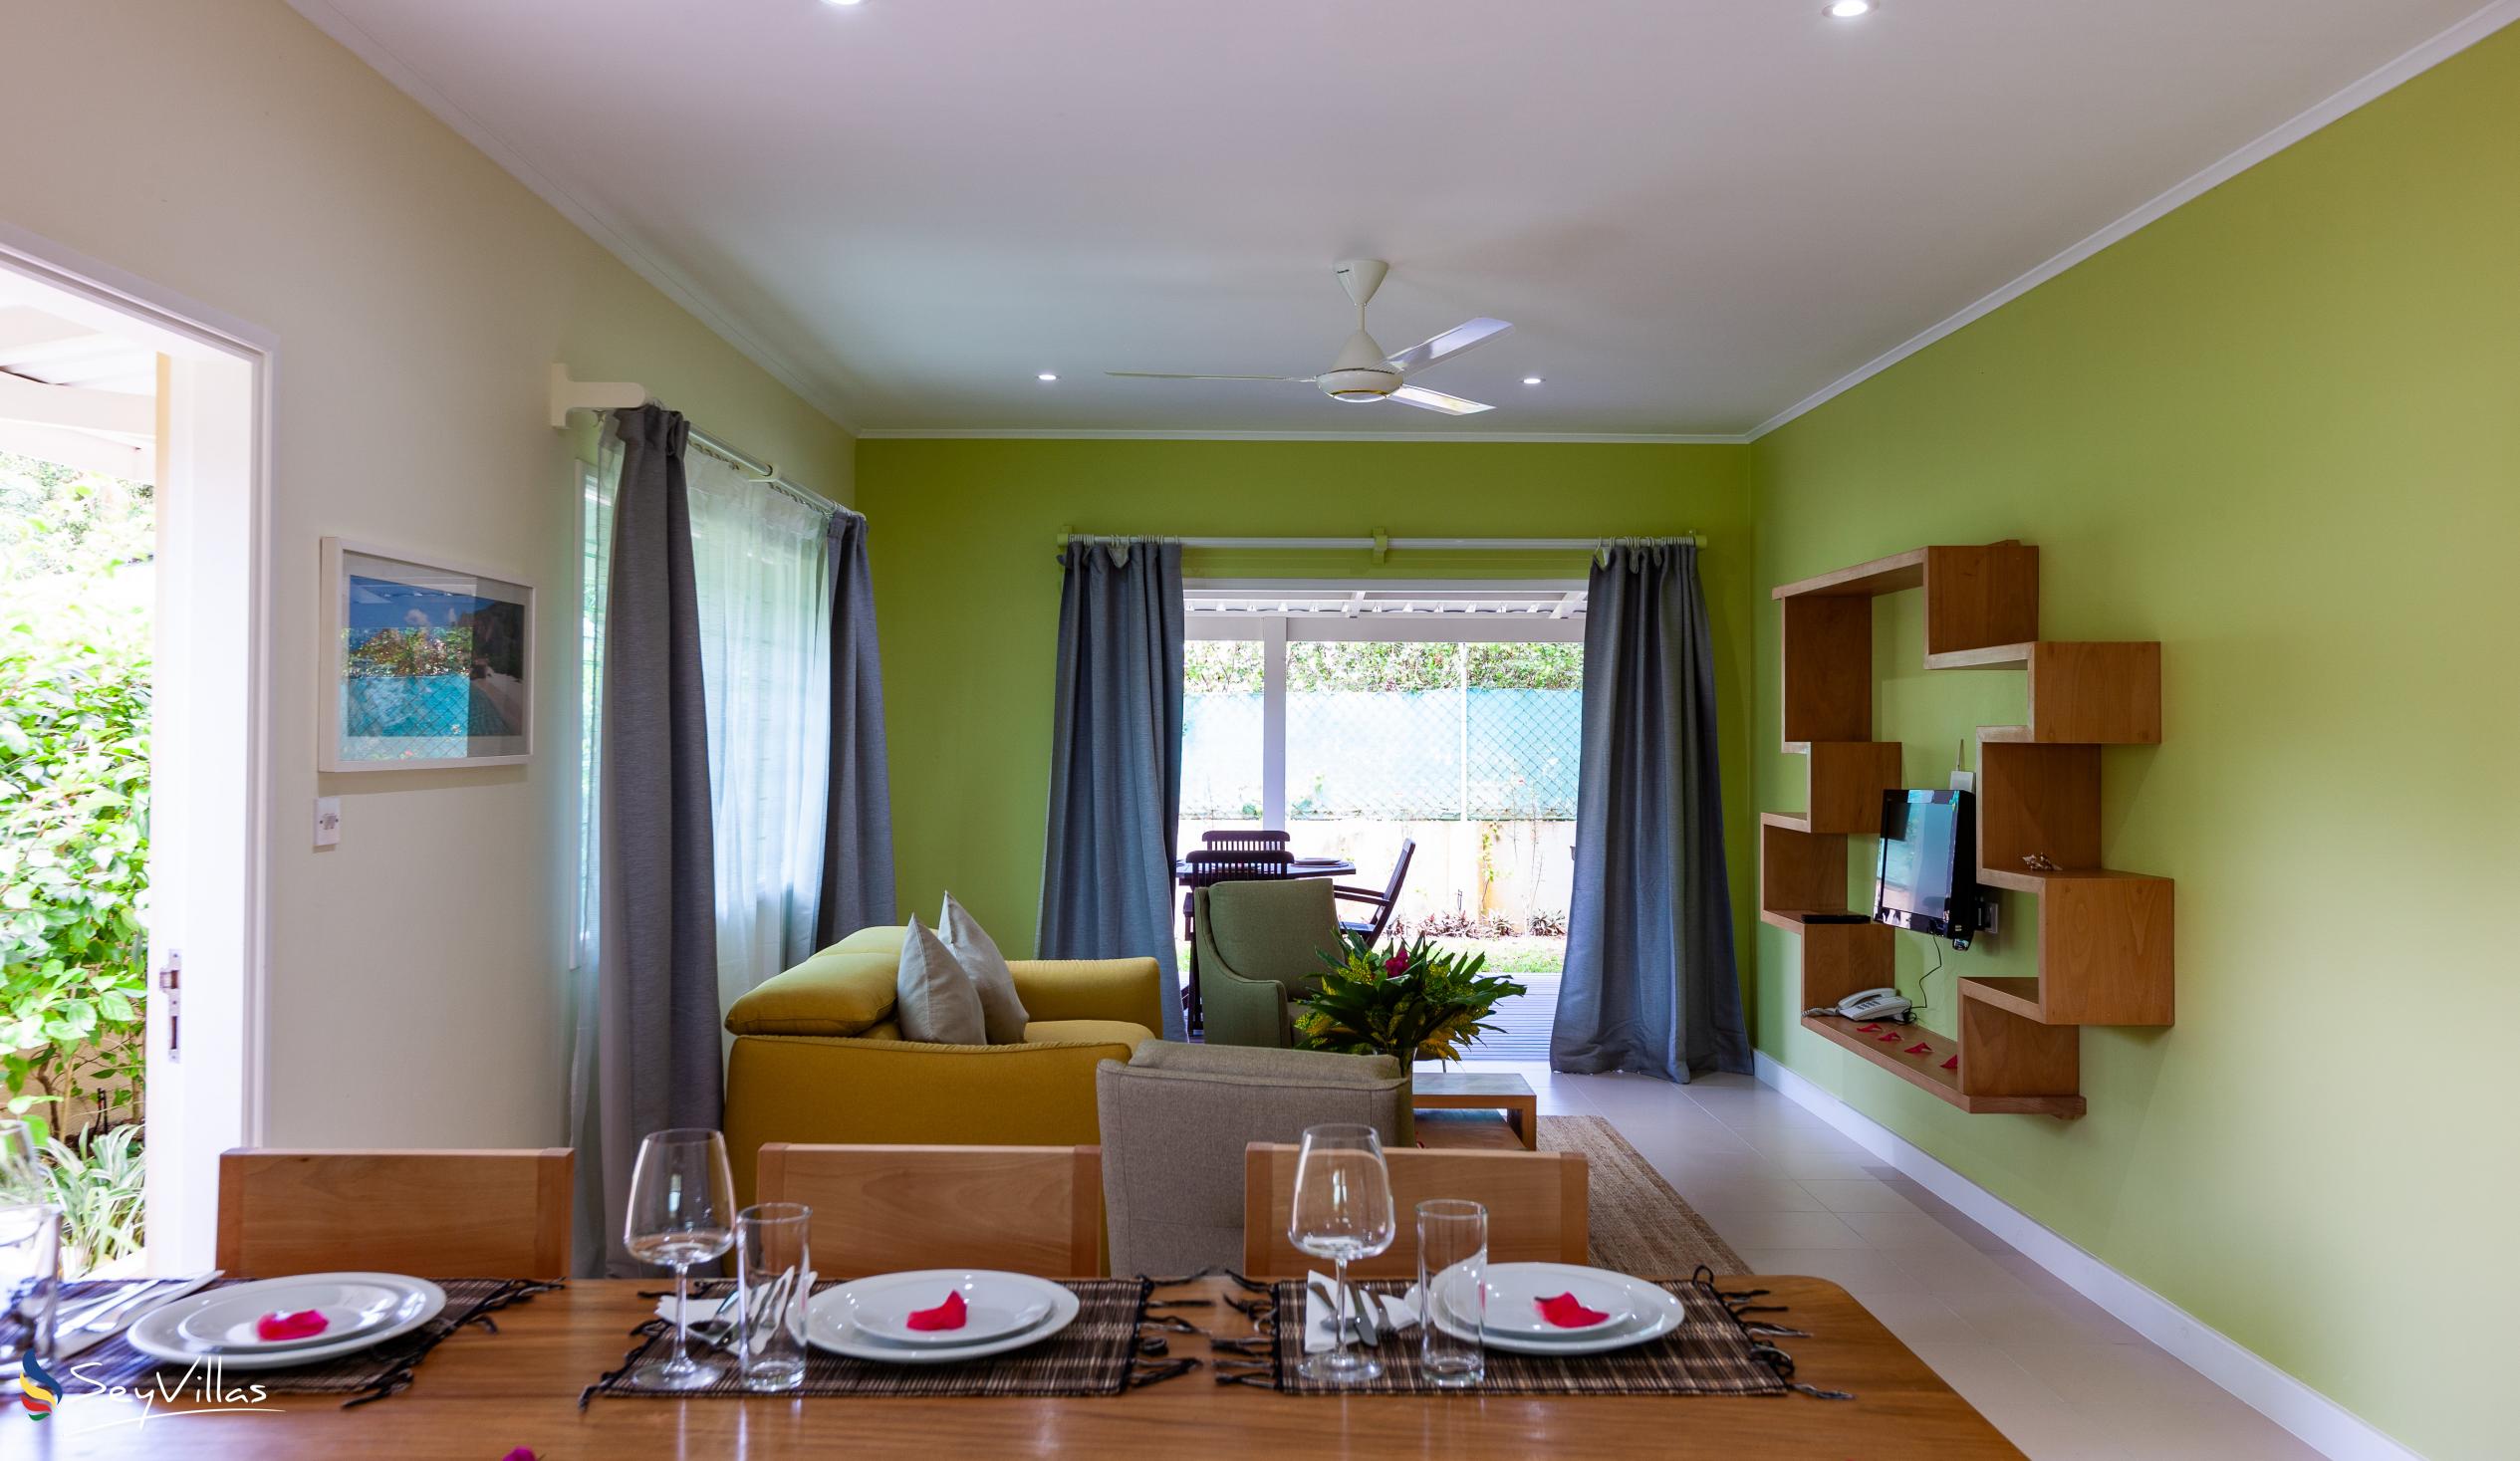 Foto 36: Residence Praslinoise - Familienappartement mit 2 Schlafzimmern (EG) - Praslin (Seychellen)